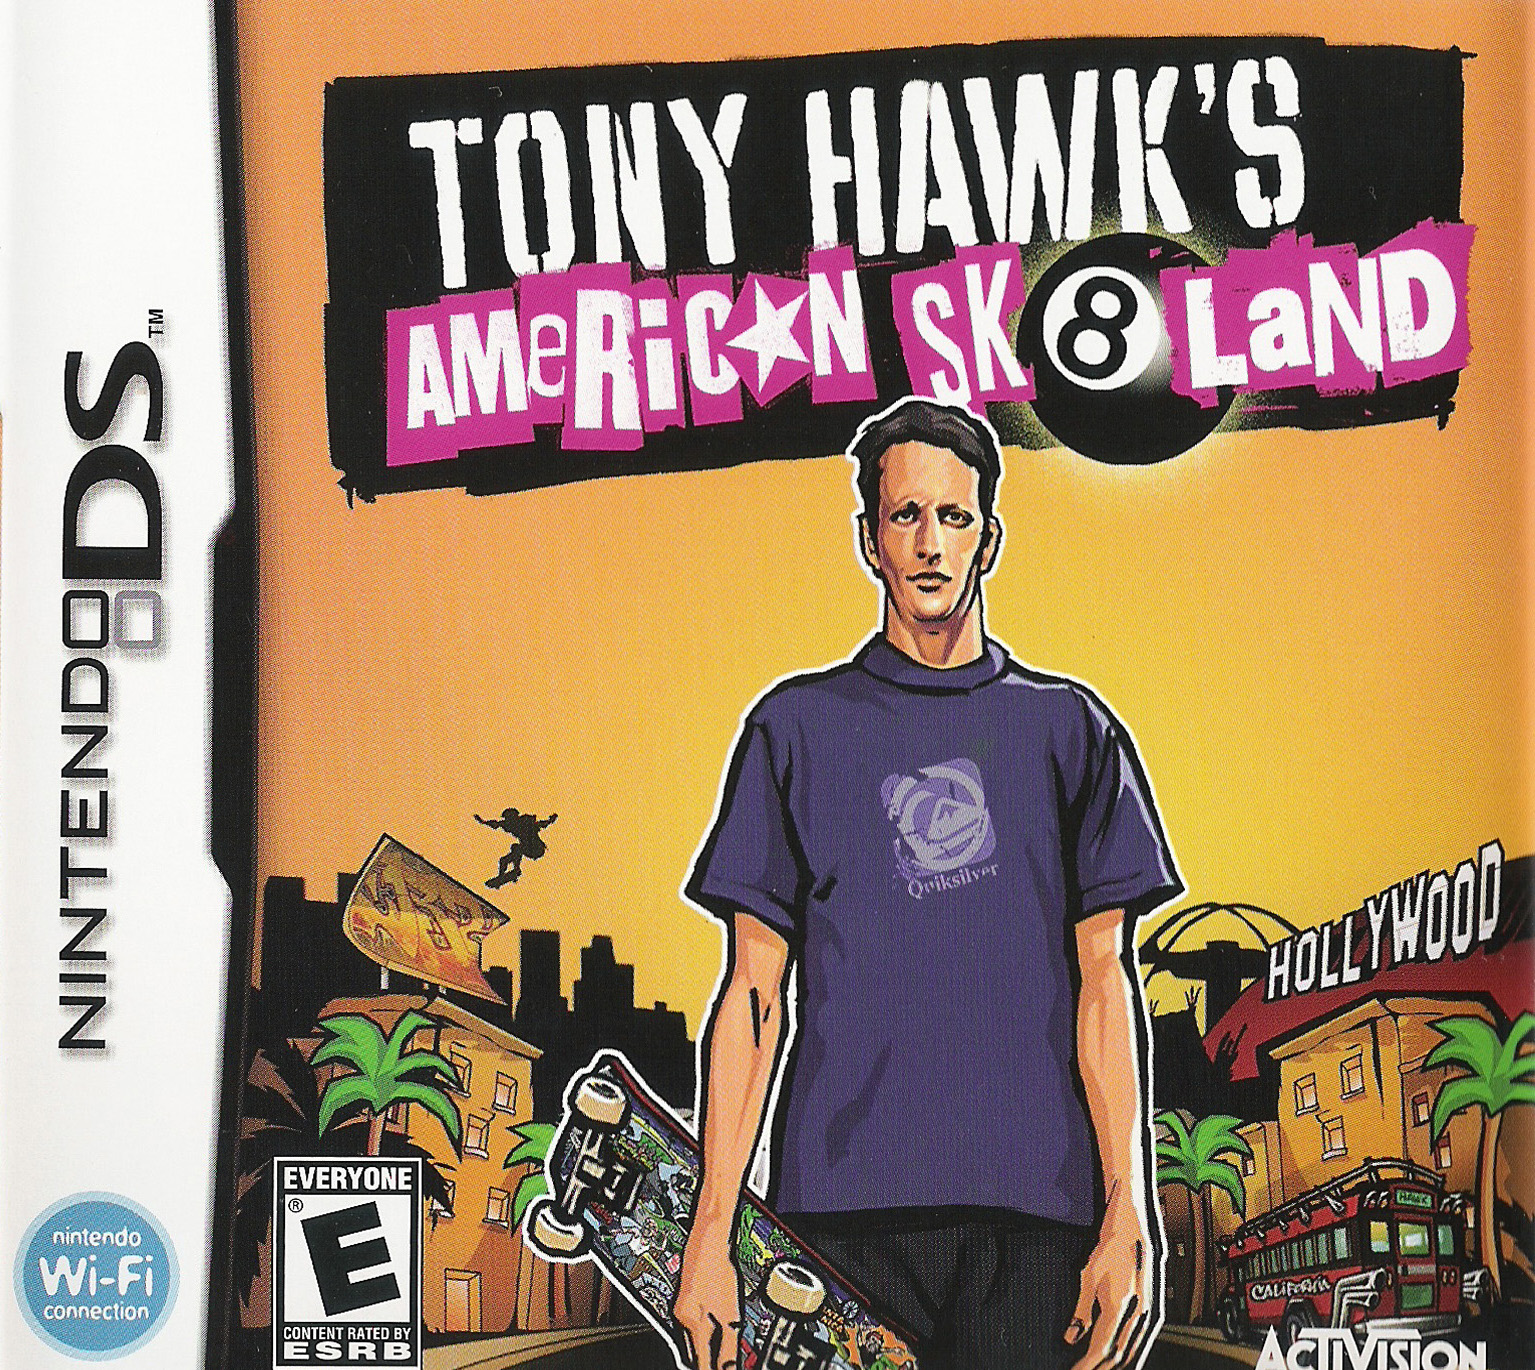 Tony hawk american. NDS Tony Hawk's. Nintendo DS Tony Hawks American. Tony Hawk's American sk8land DS. Тони Хоук Американ вестленд.